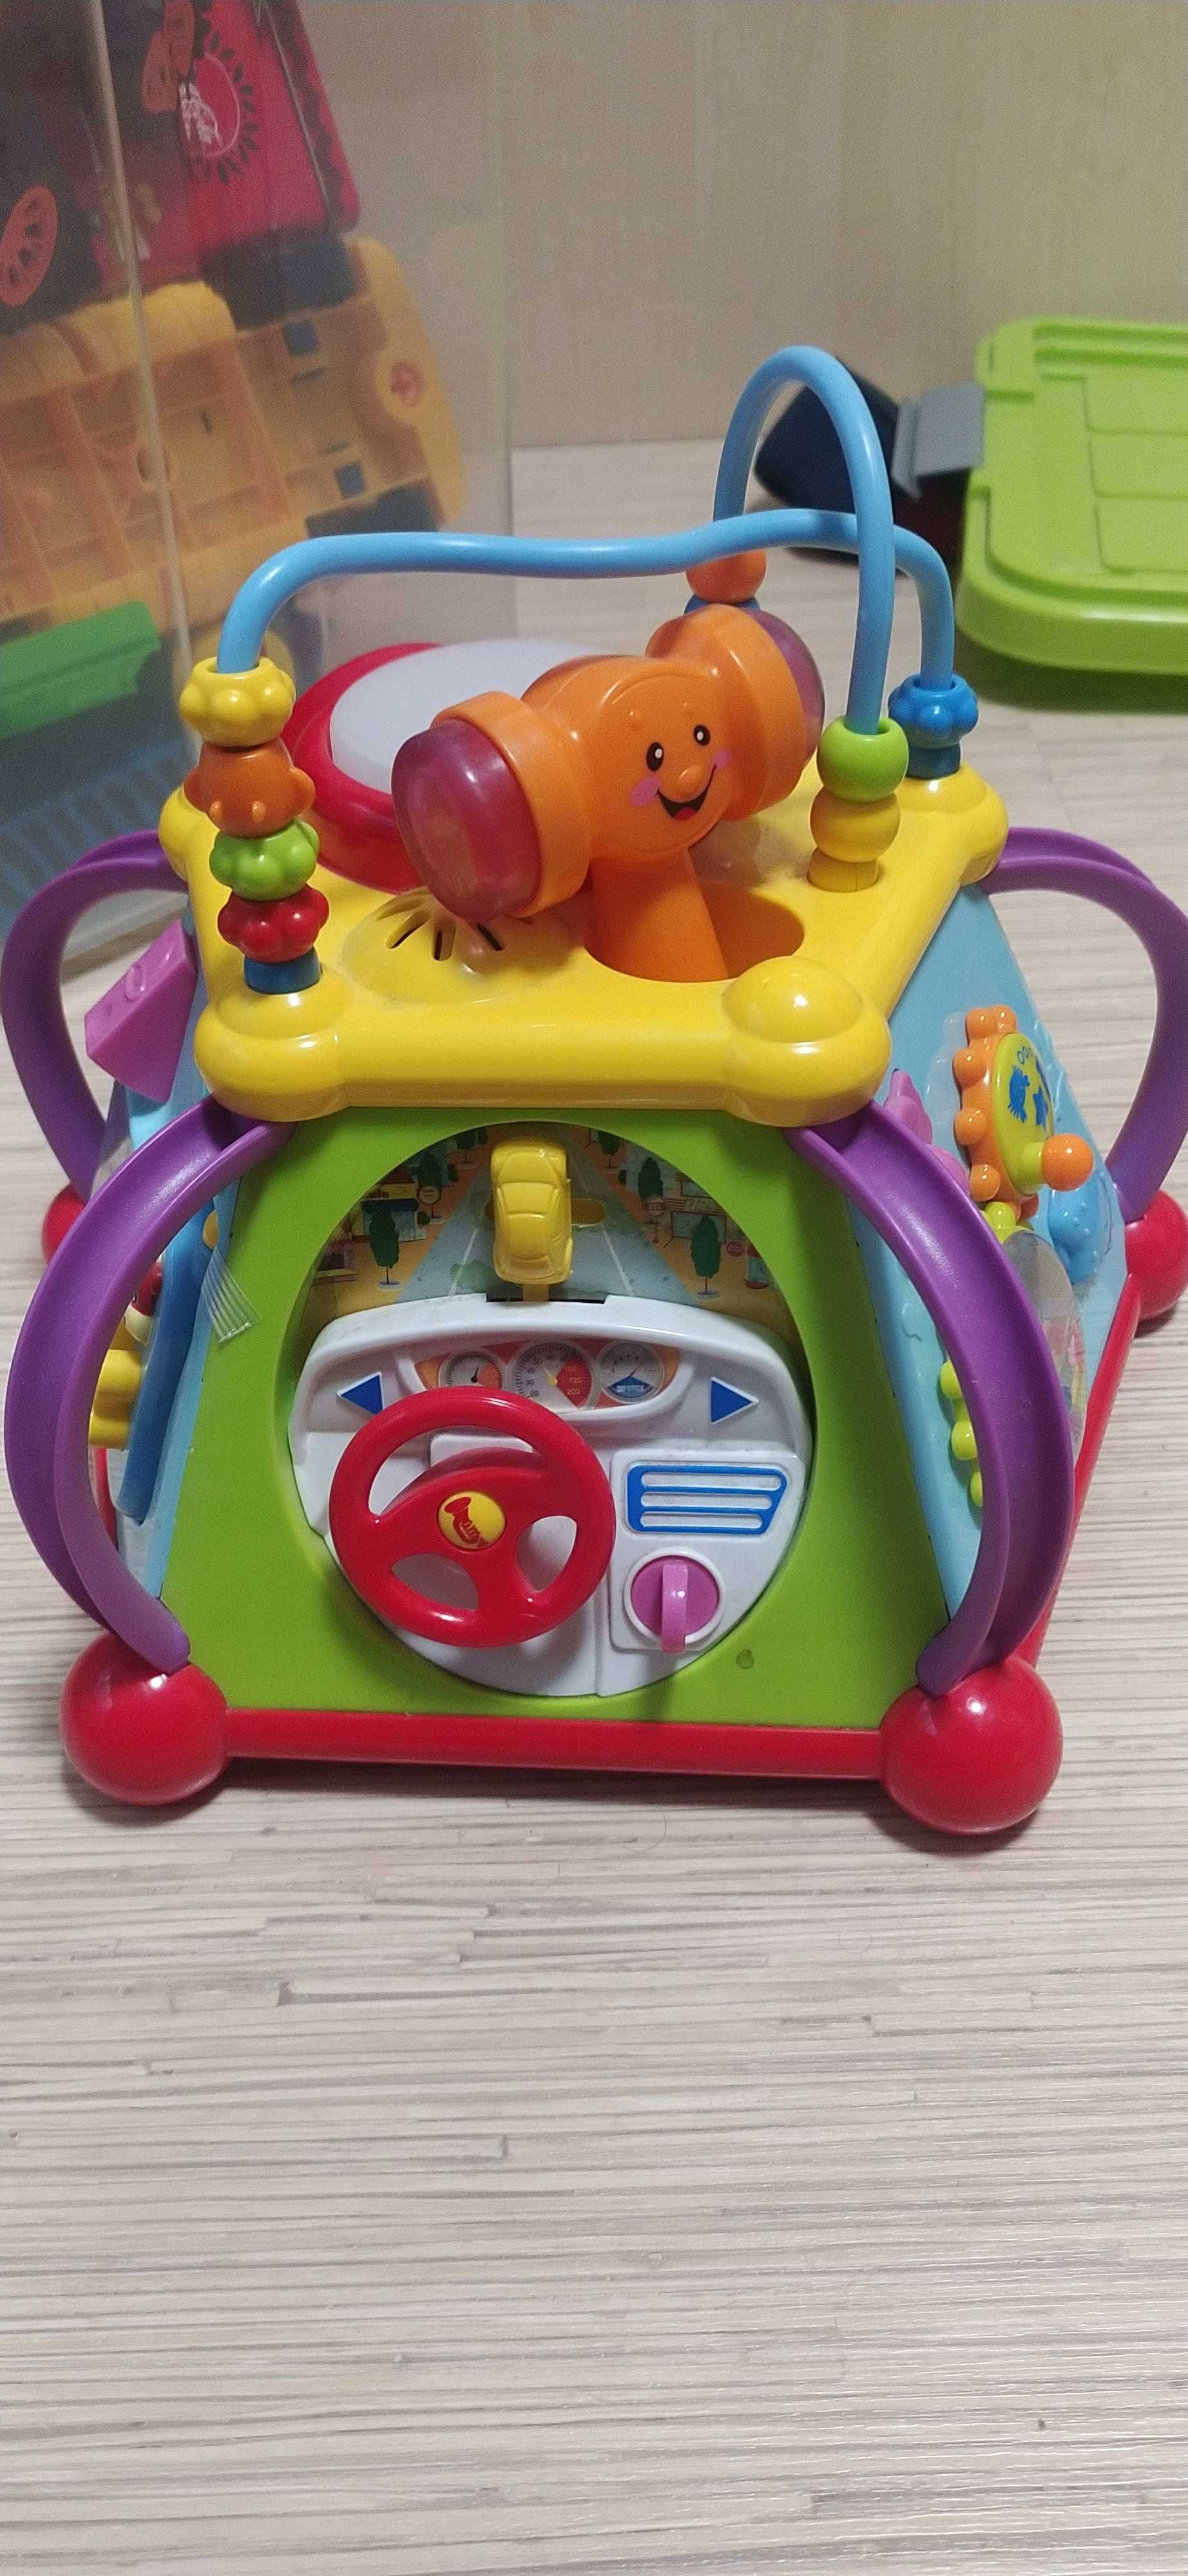 Интерактивна играчка Mappy Toys, Ховърбол, Детски прожектор, Робо змия